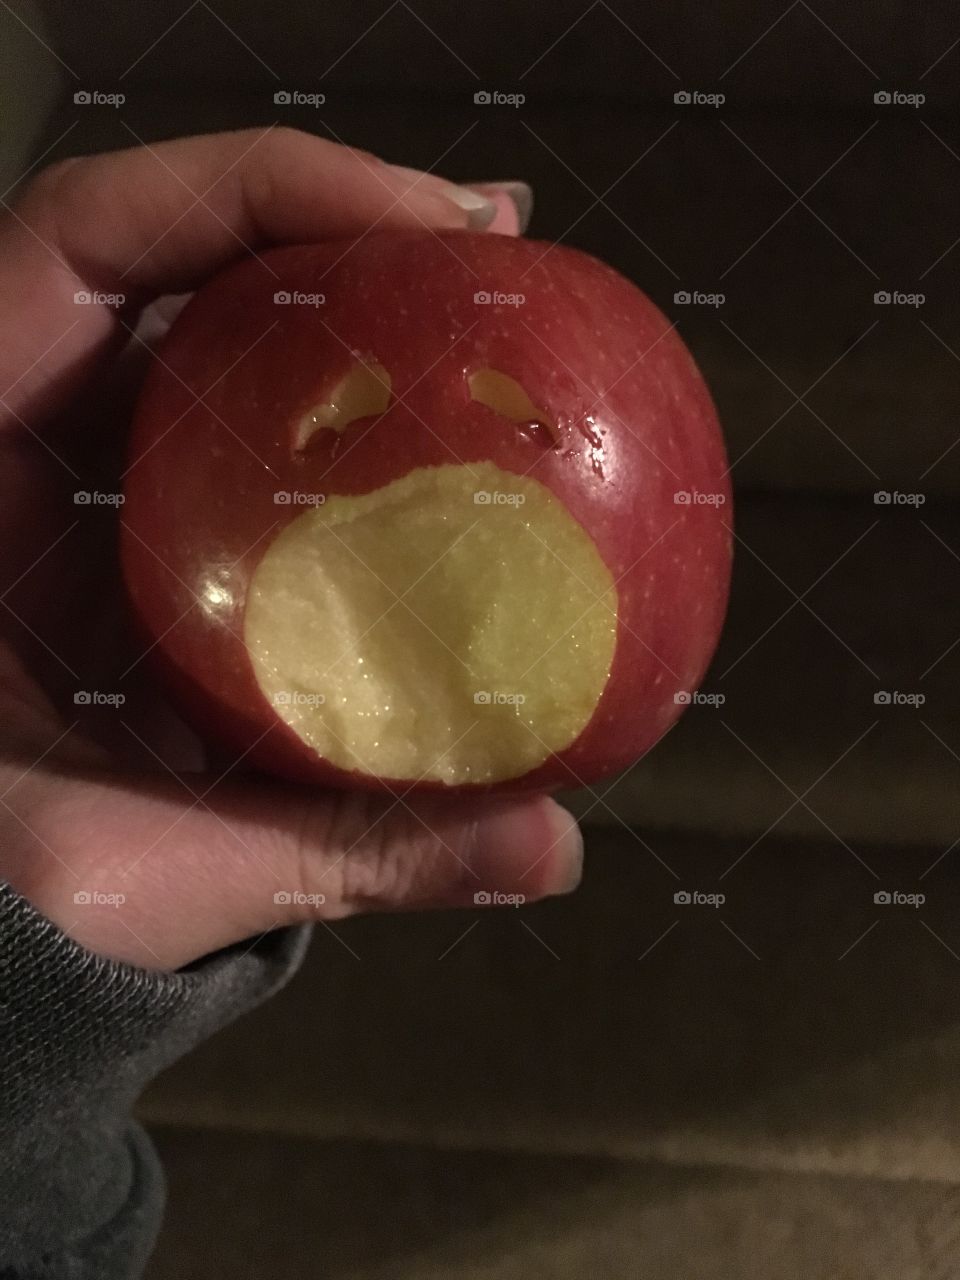 Ahhhh! Apple